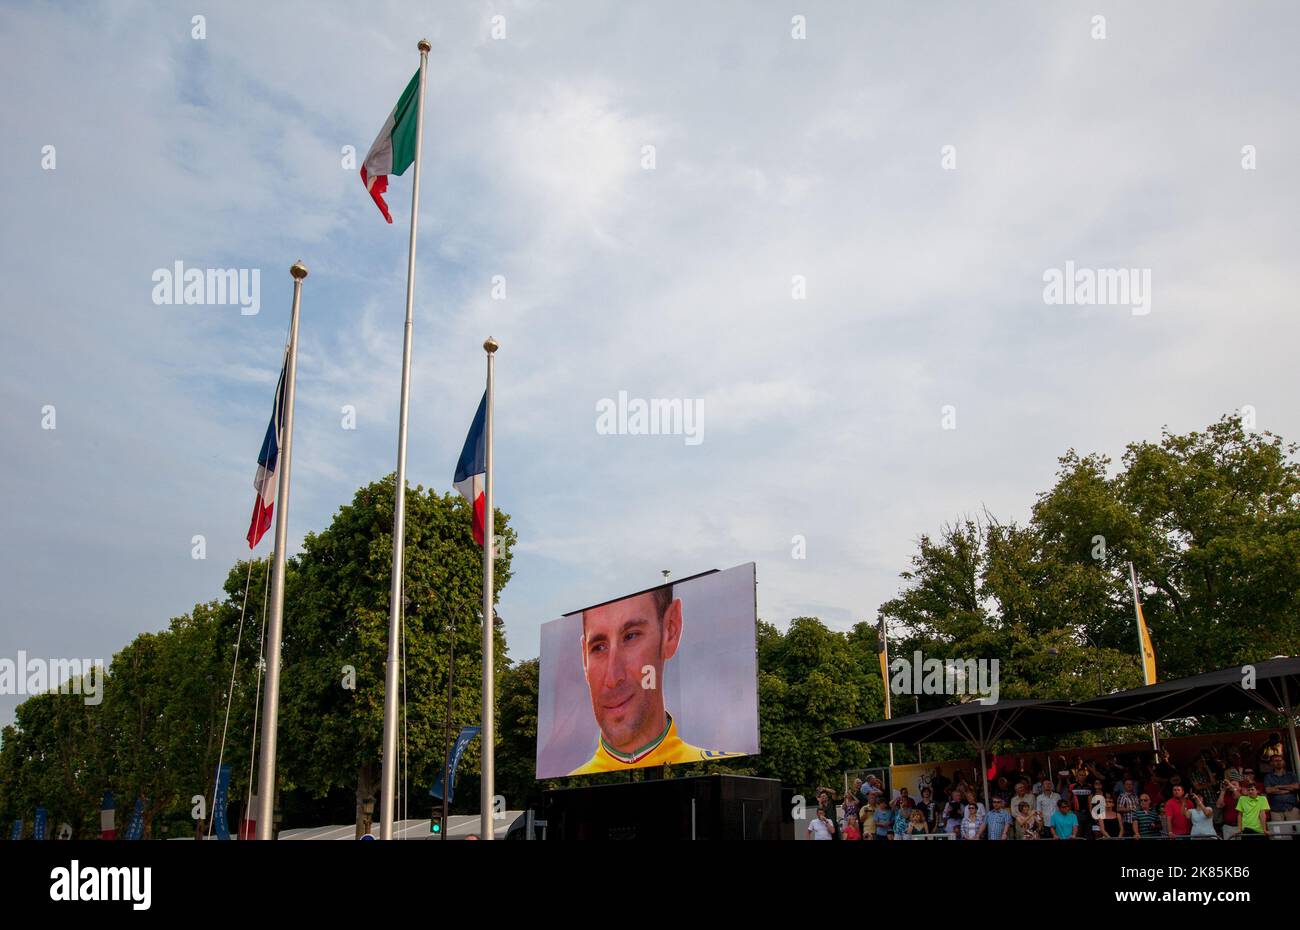 Étape 21 Tour de France Evry - Paris champs Elyesse - Vincenzo Nibali sur le podium tandis que le drapeau italien s'affiche dans le vent Banque D'Images